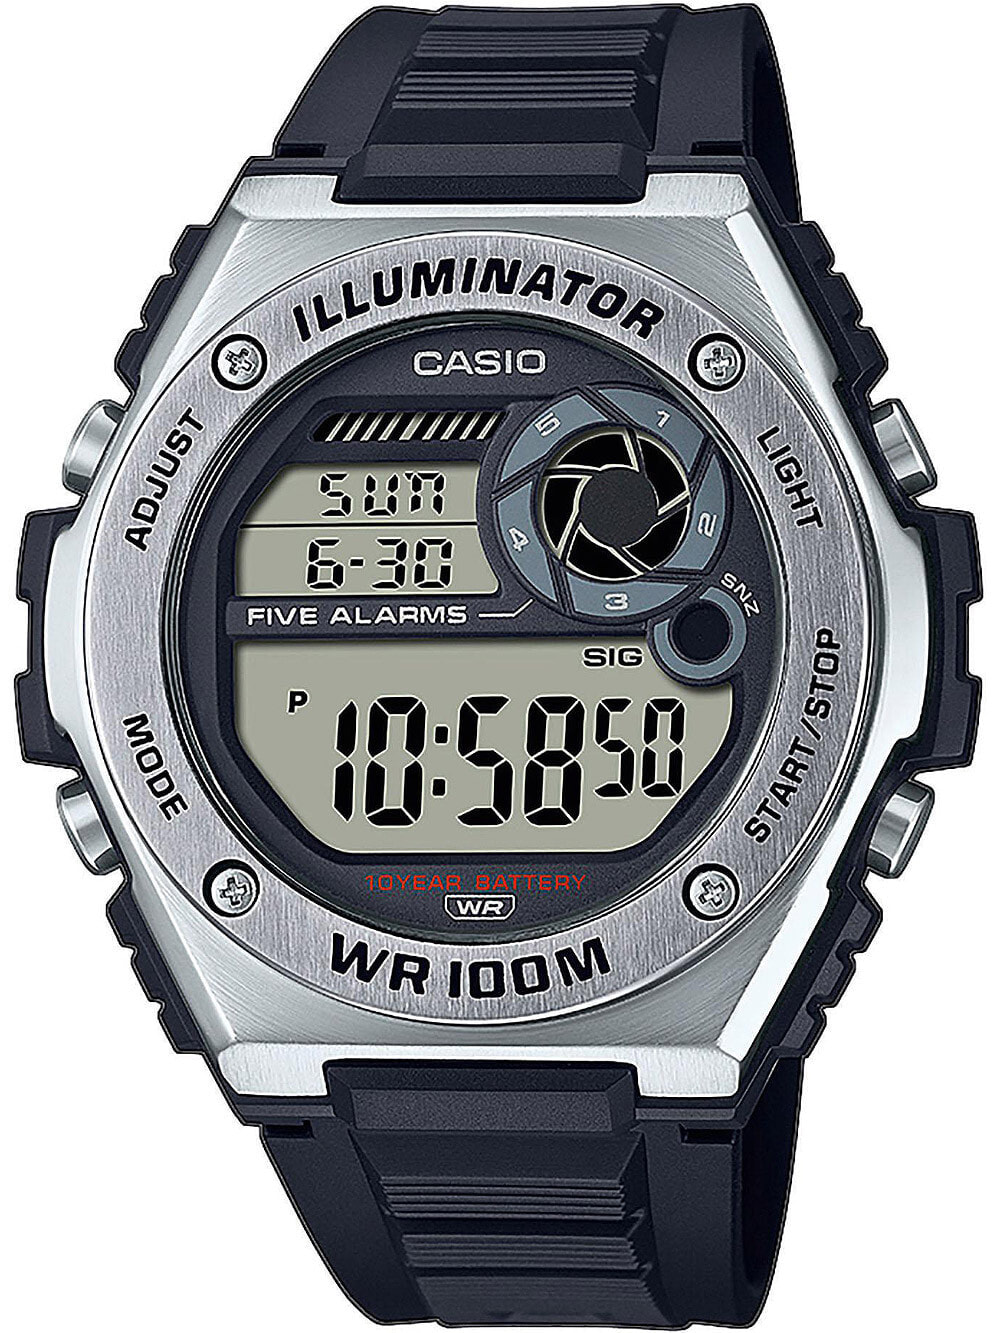 Мужские наручные электронные часы с черным браслетом Casio MWD-100H-1AVEF Collection mens 50mm 10ATM